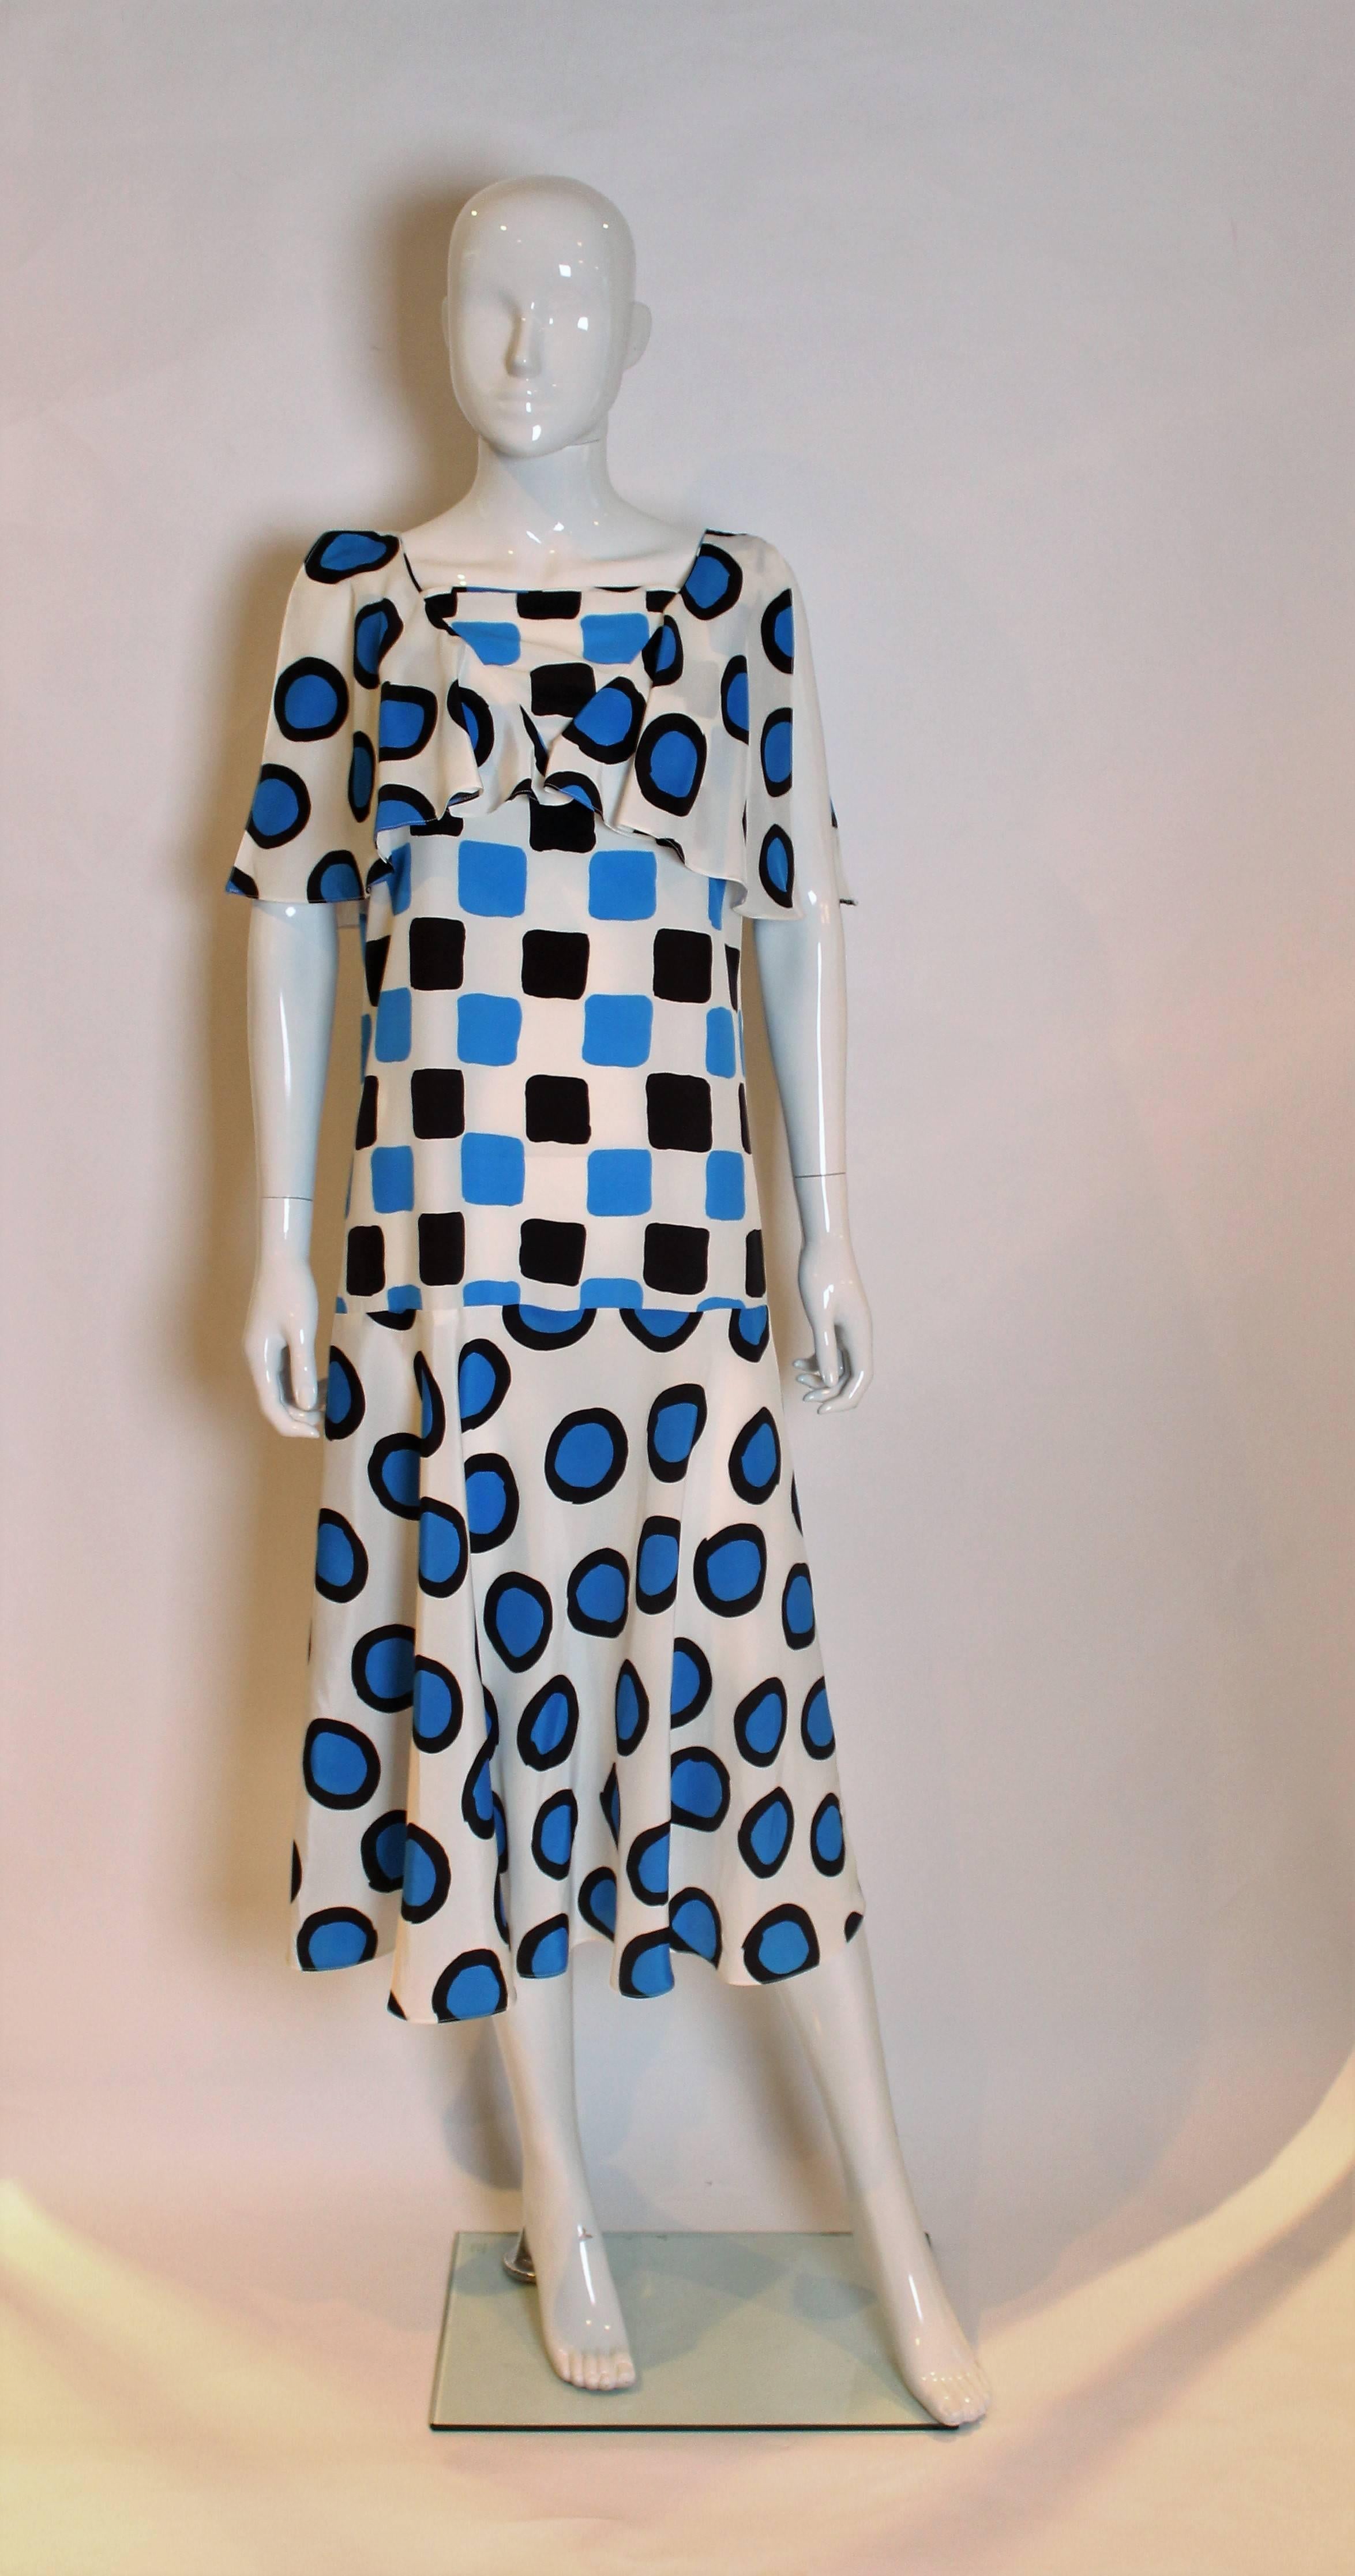 Une robe chic en soie mélangée par Christina Strambolia ( qui a produit la robe de la vengeance de Diana). La robe a un fond blanc, avec des cercles bleus et noirs, une taille basse, une jupe évasée et un col ample.